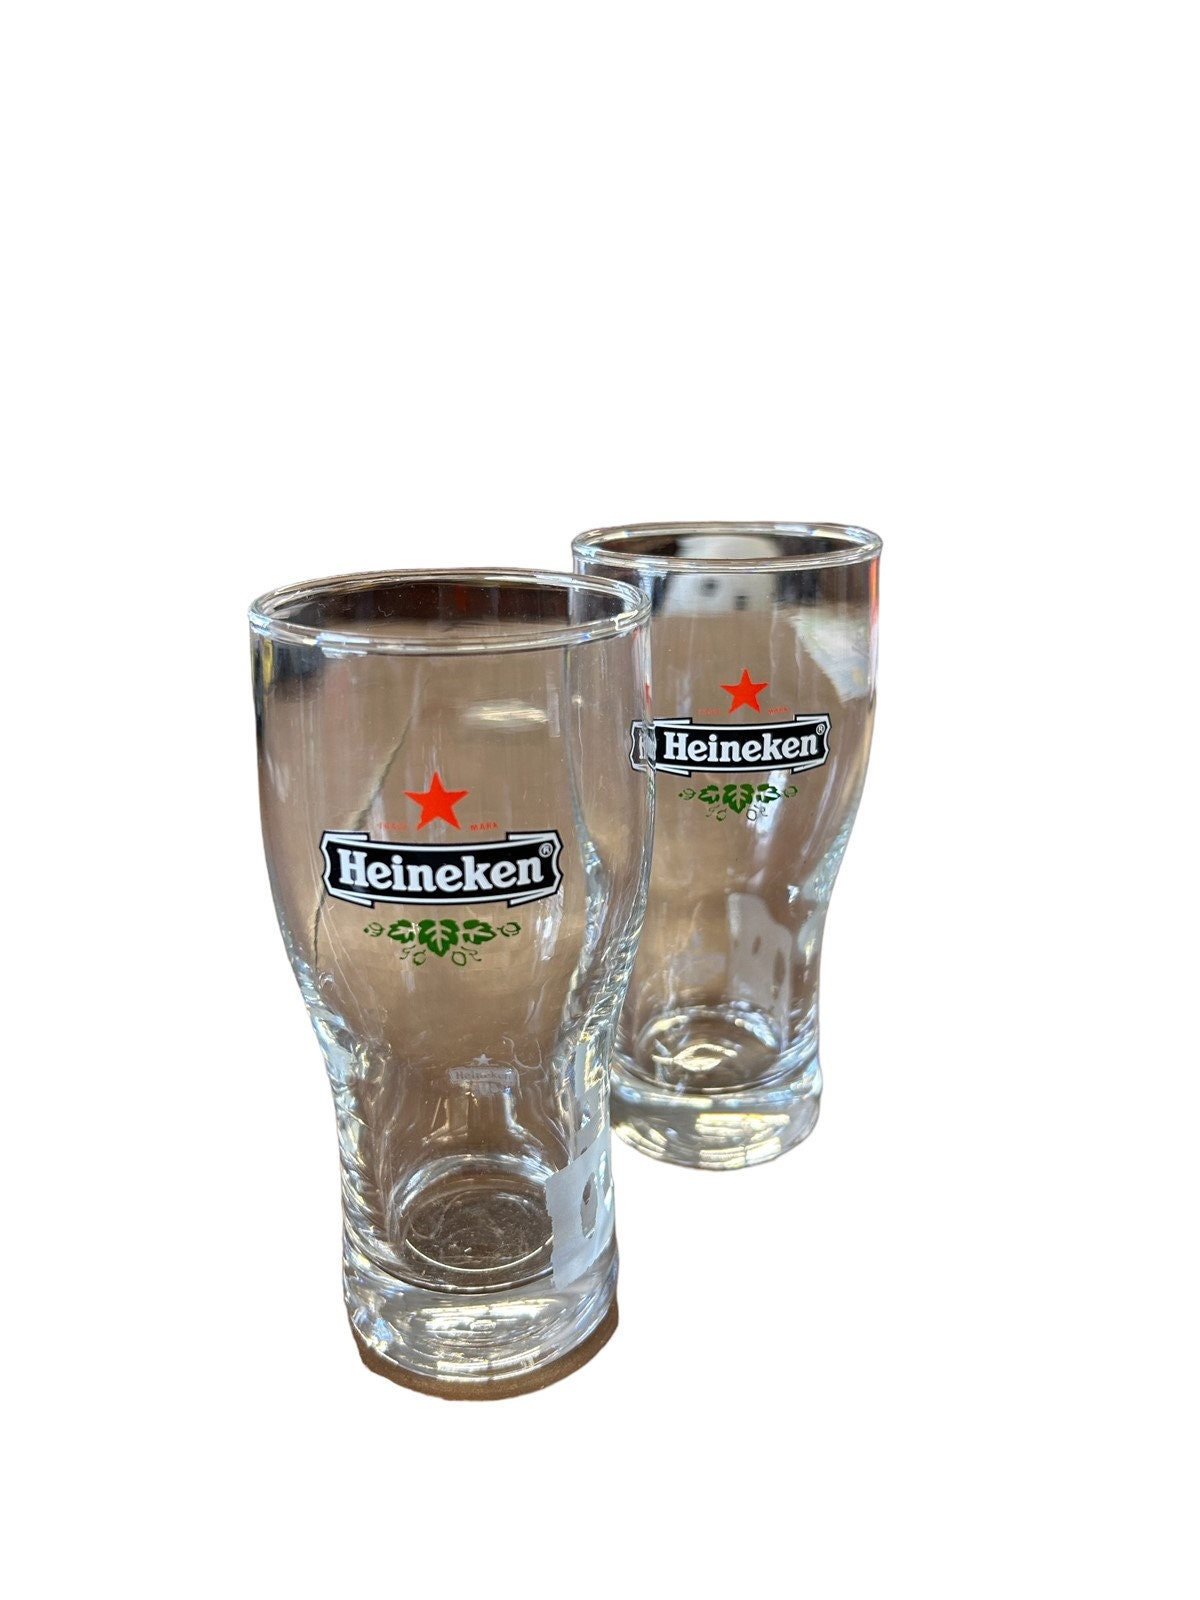 Heineken Bier glasses set/ 2 slim 6 oz glasses Heineken beer small pilsner  pair